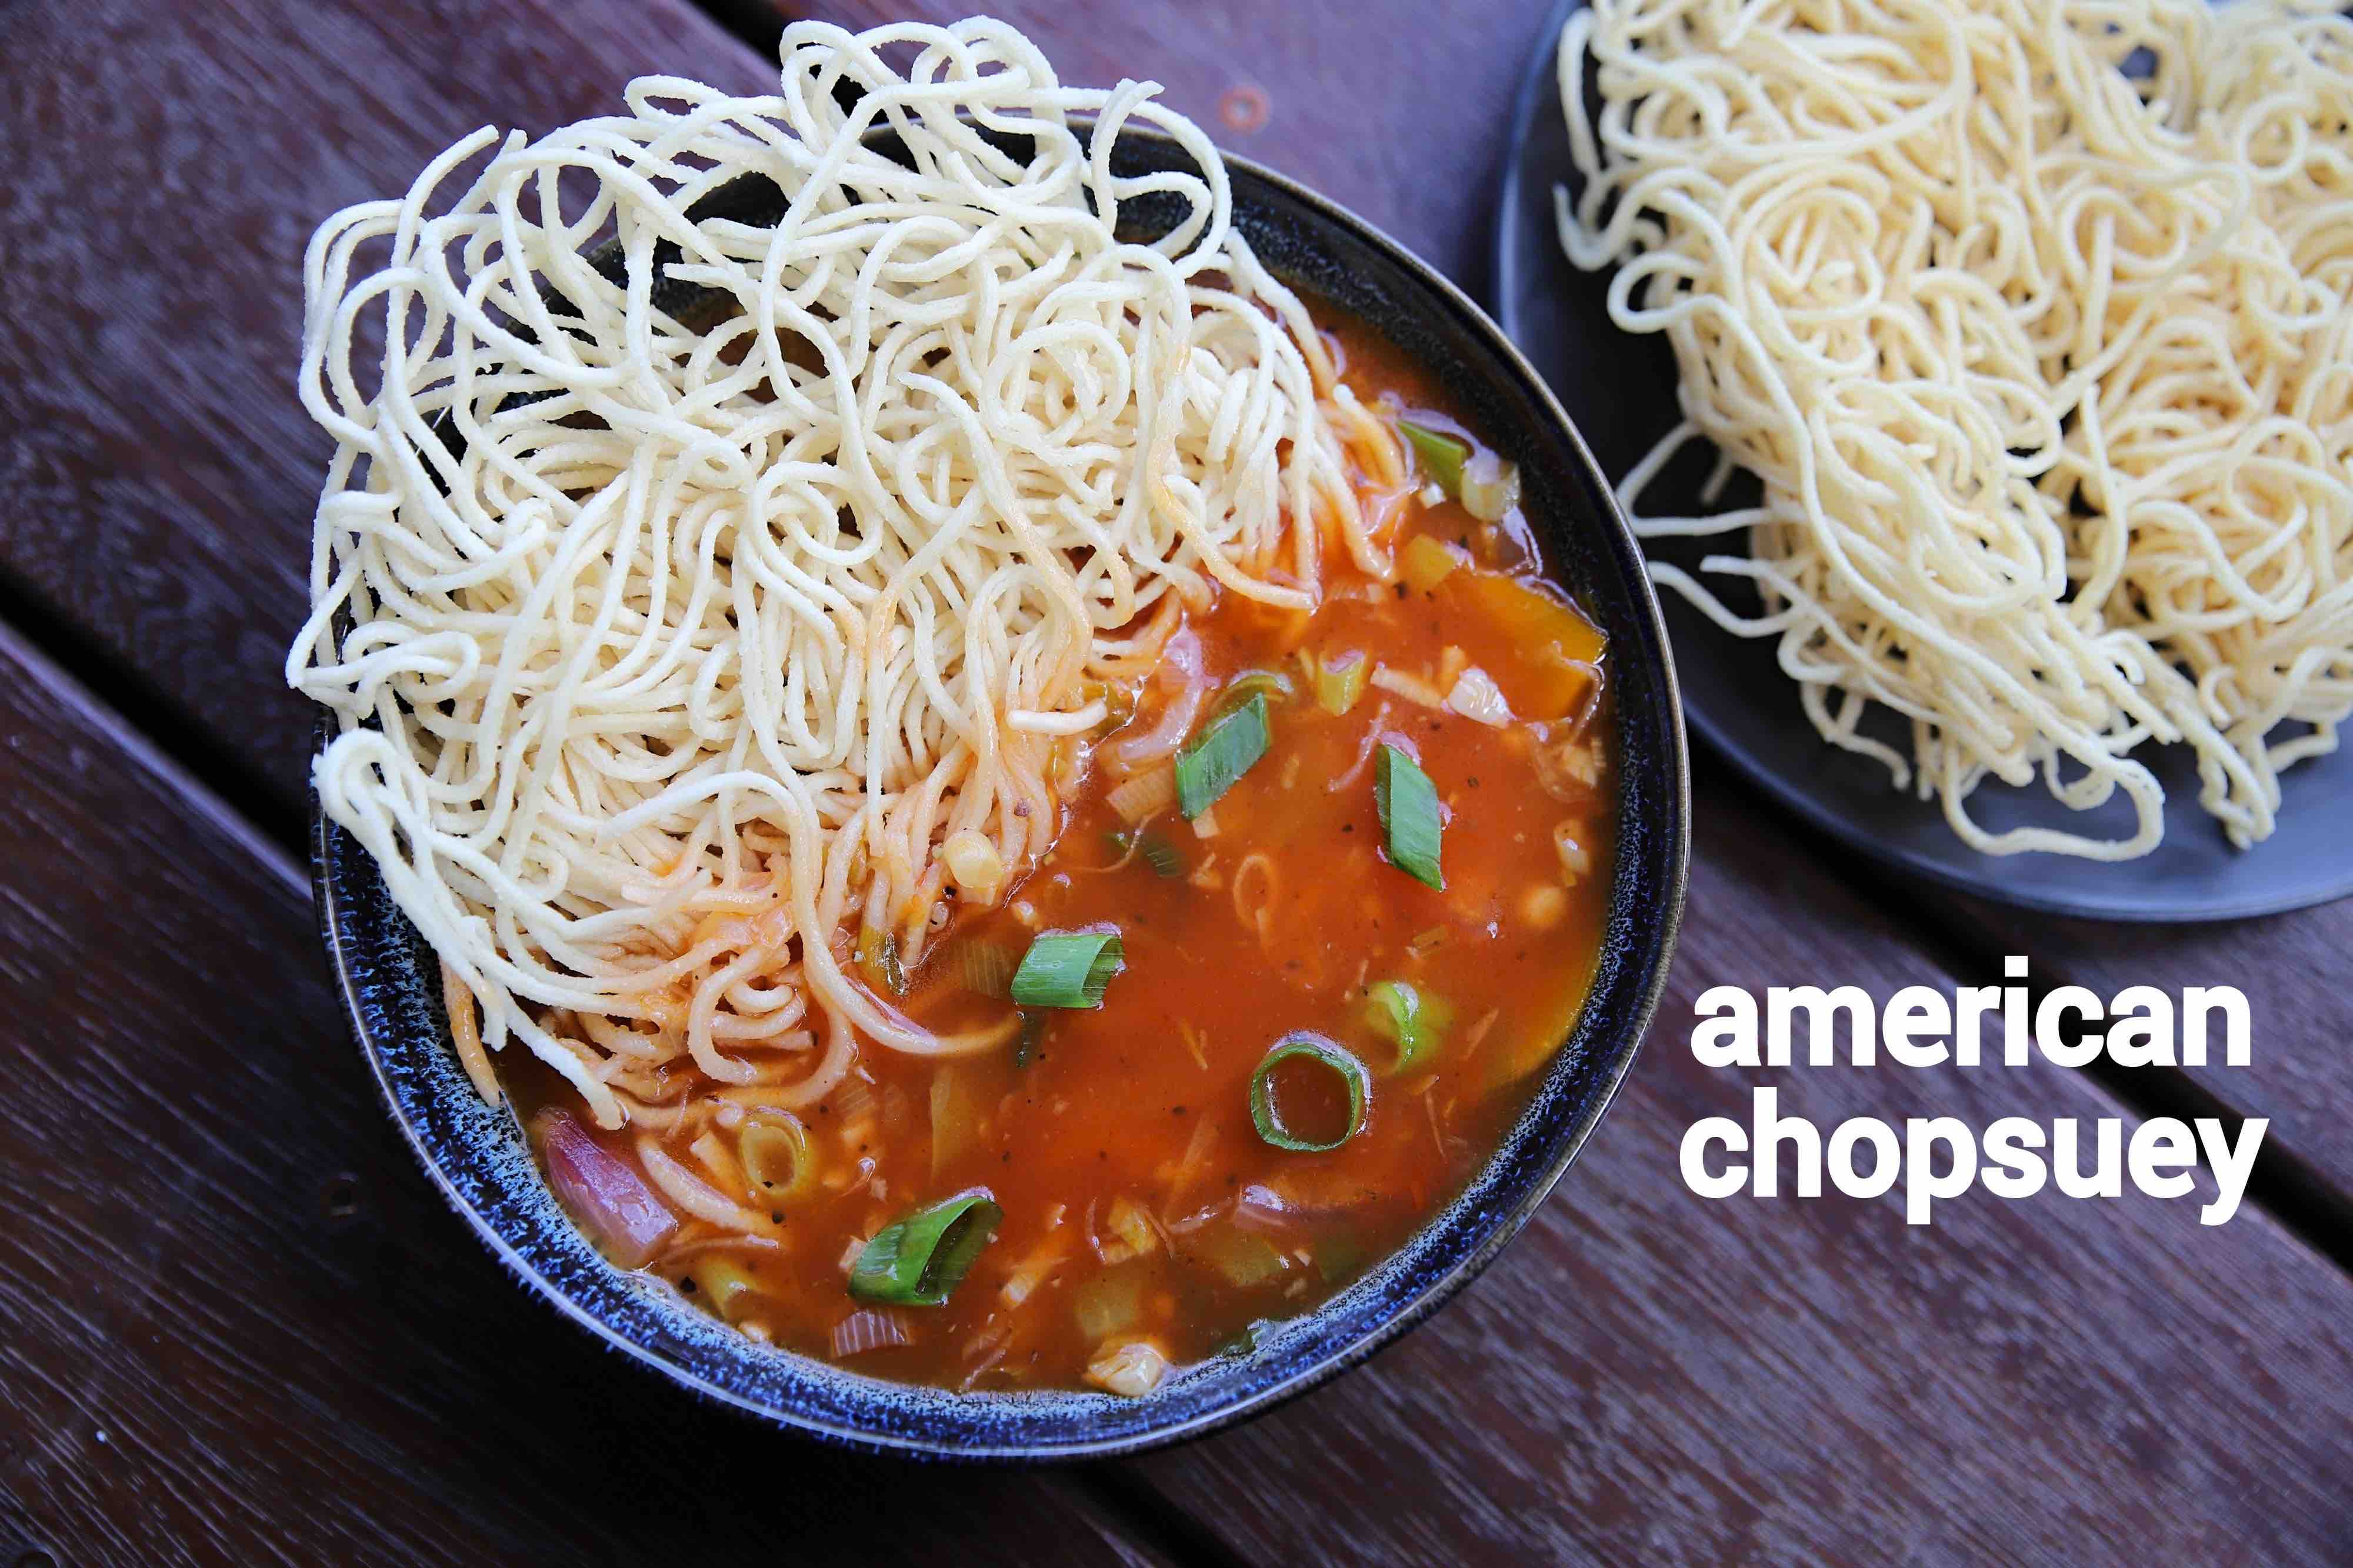 original american chop suey recipe